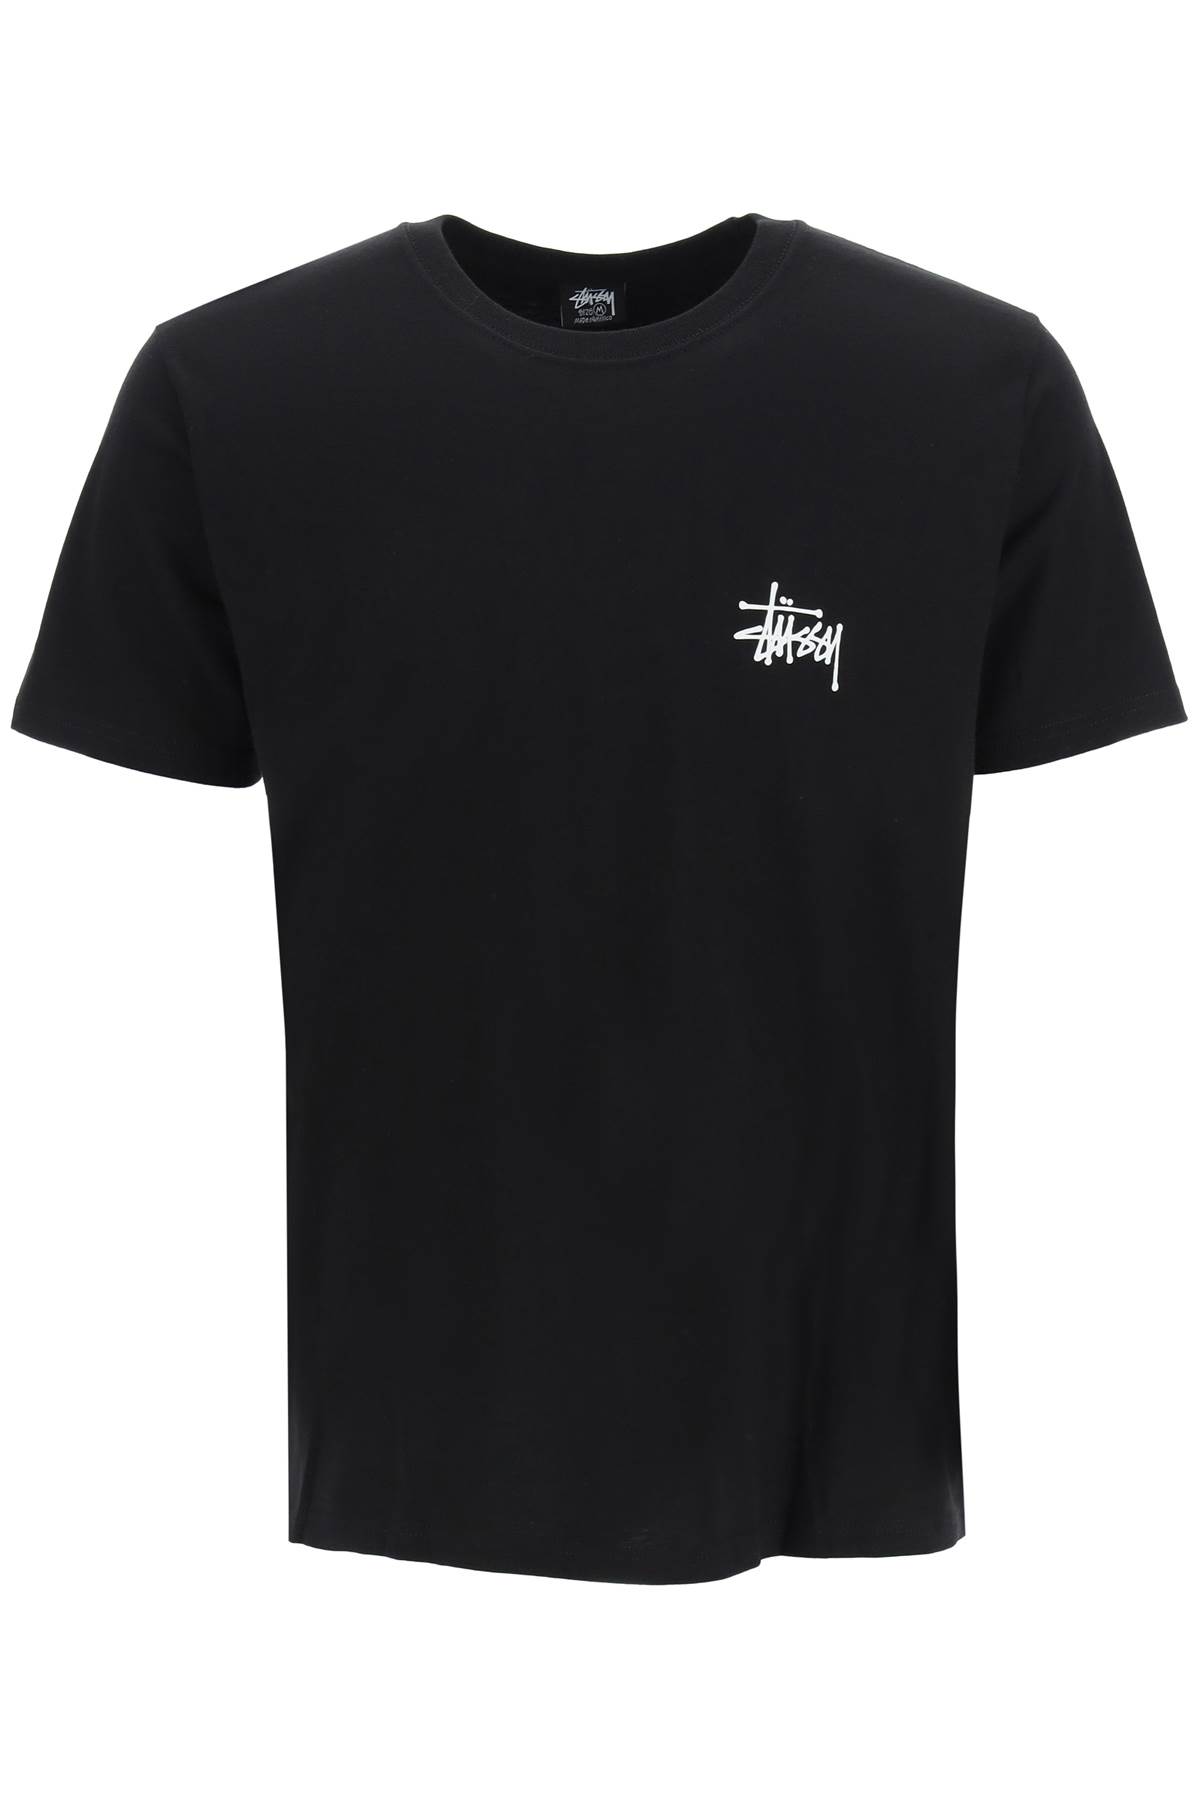 Stussy Basic T-shirt With Logo